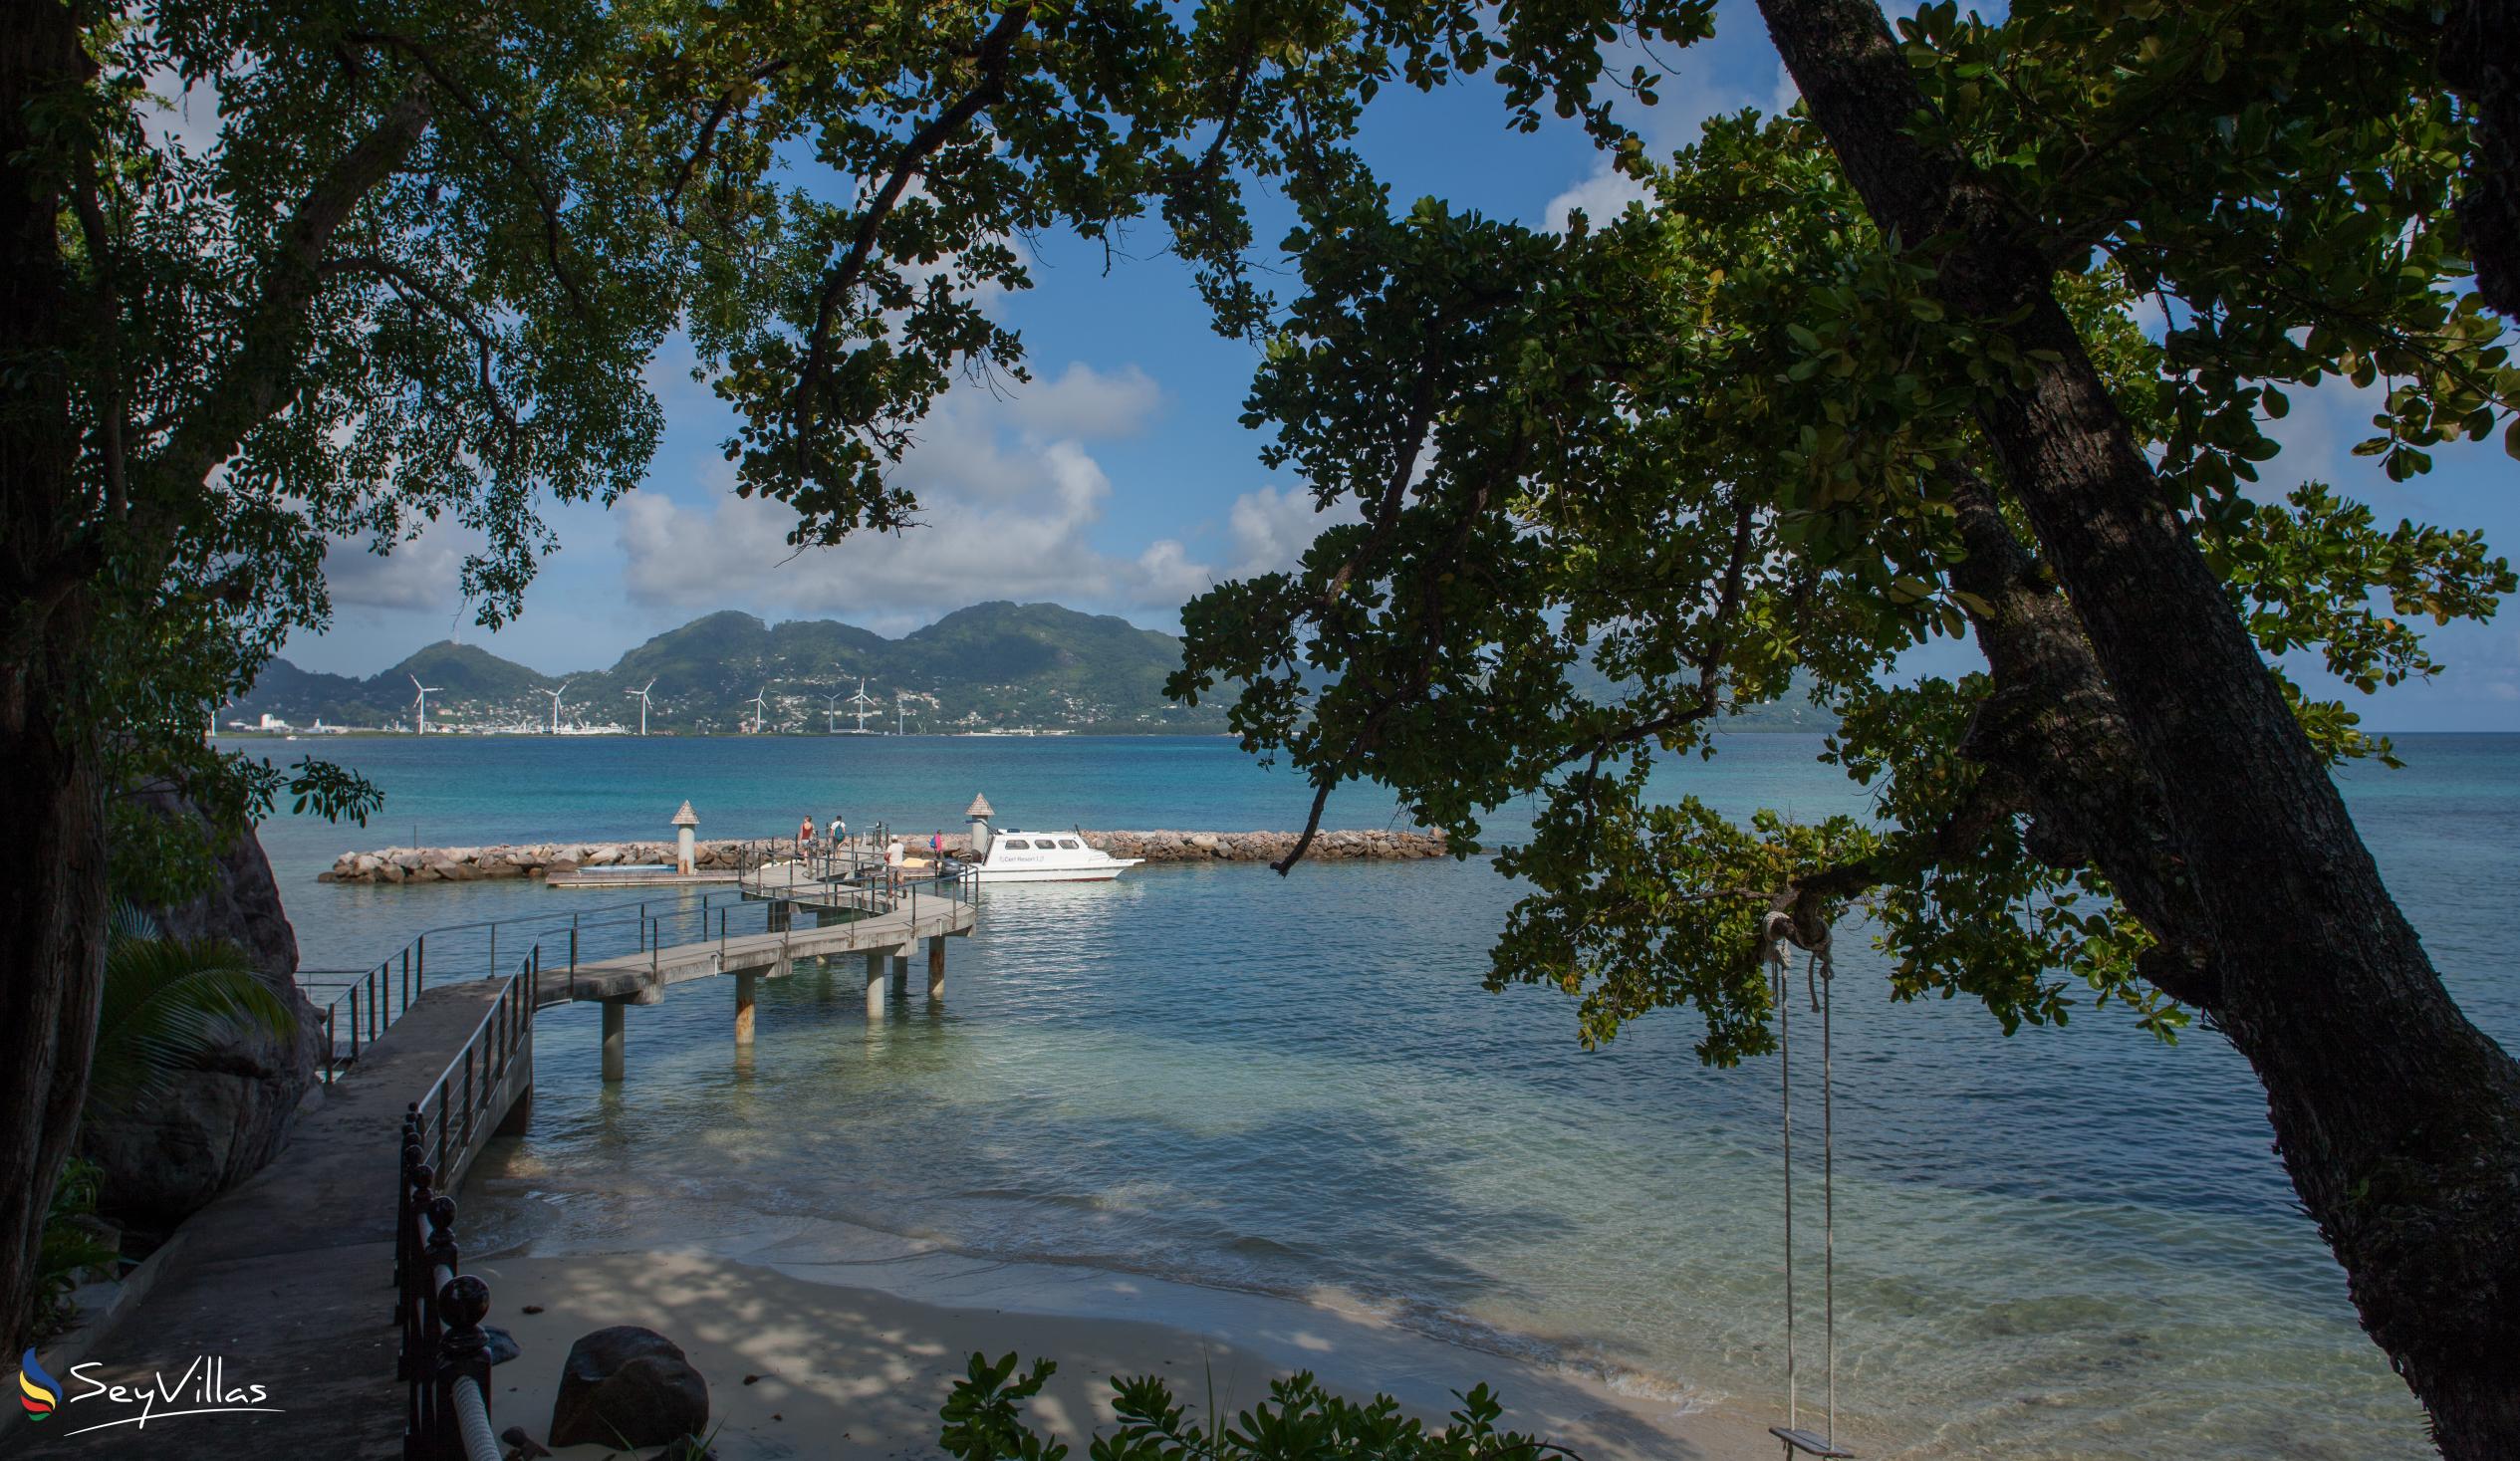 Foto 5: Cerf Island Resort - Lage - Cerf Island (Seychellen)